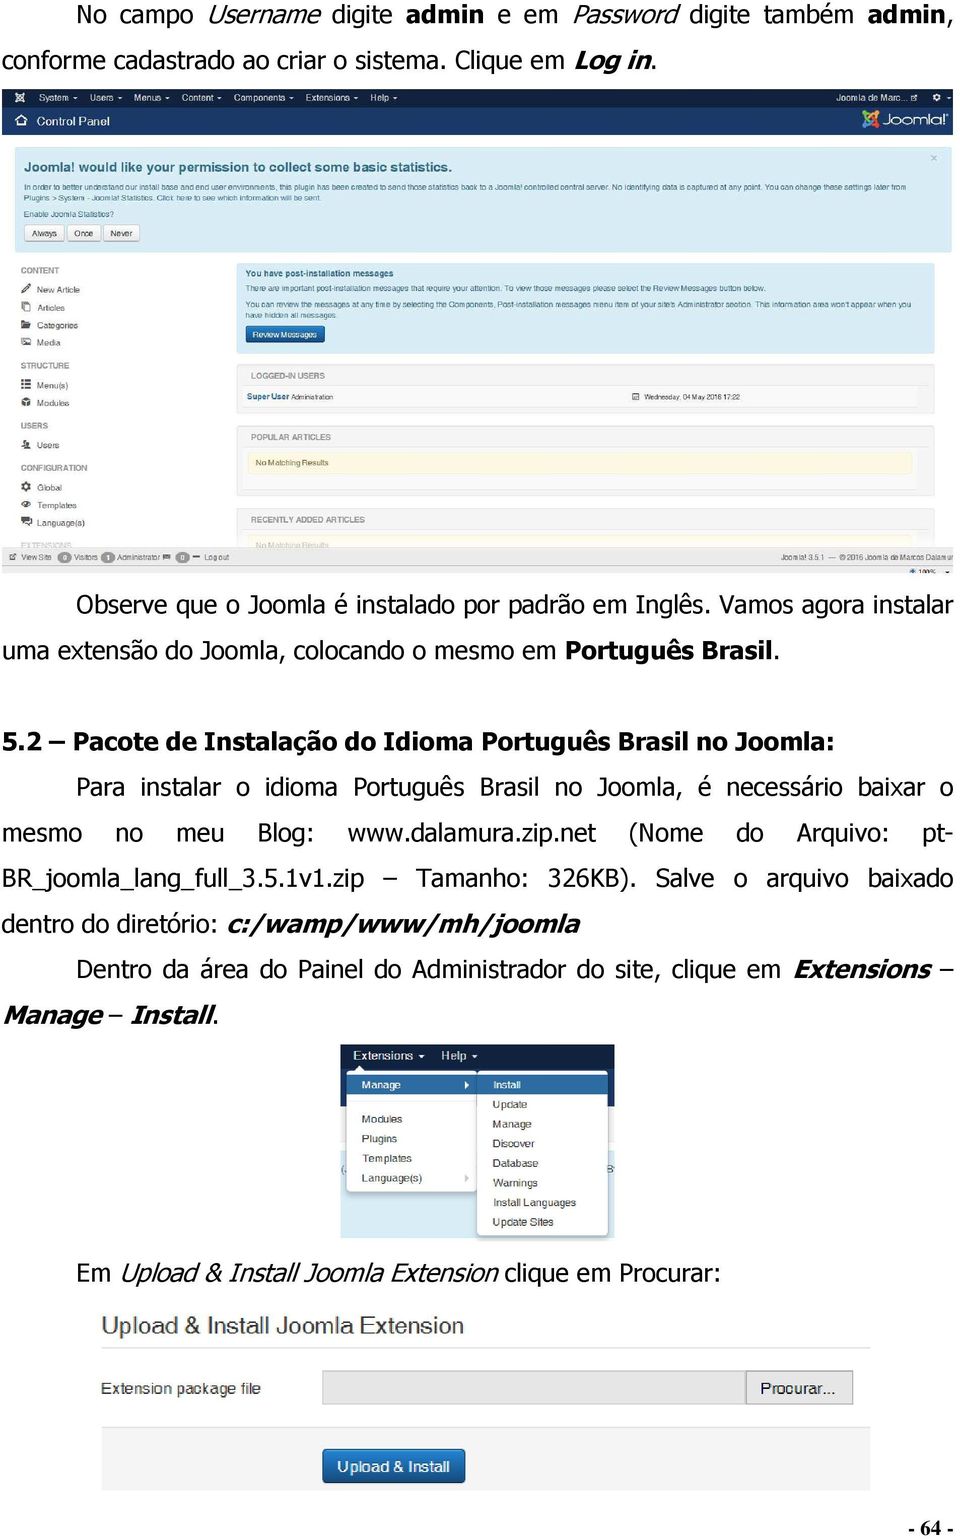 2 Pacote de Instalação do Idioma Português Brasil no Joomla: Para instalar o idioma Português Brasil no Joomla, é necessário baixar o mesmo no meu Blog: www.dalamura.zip.